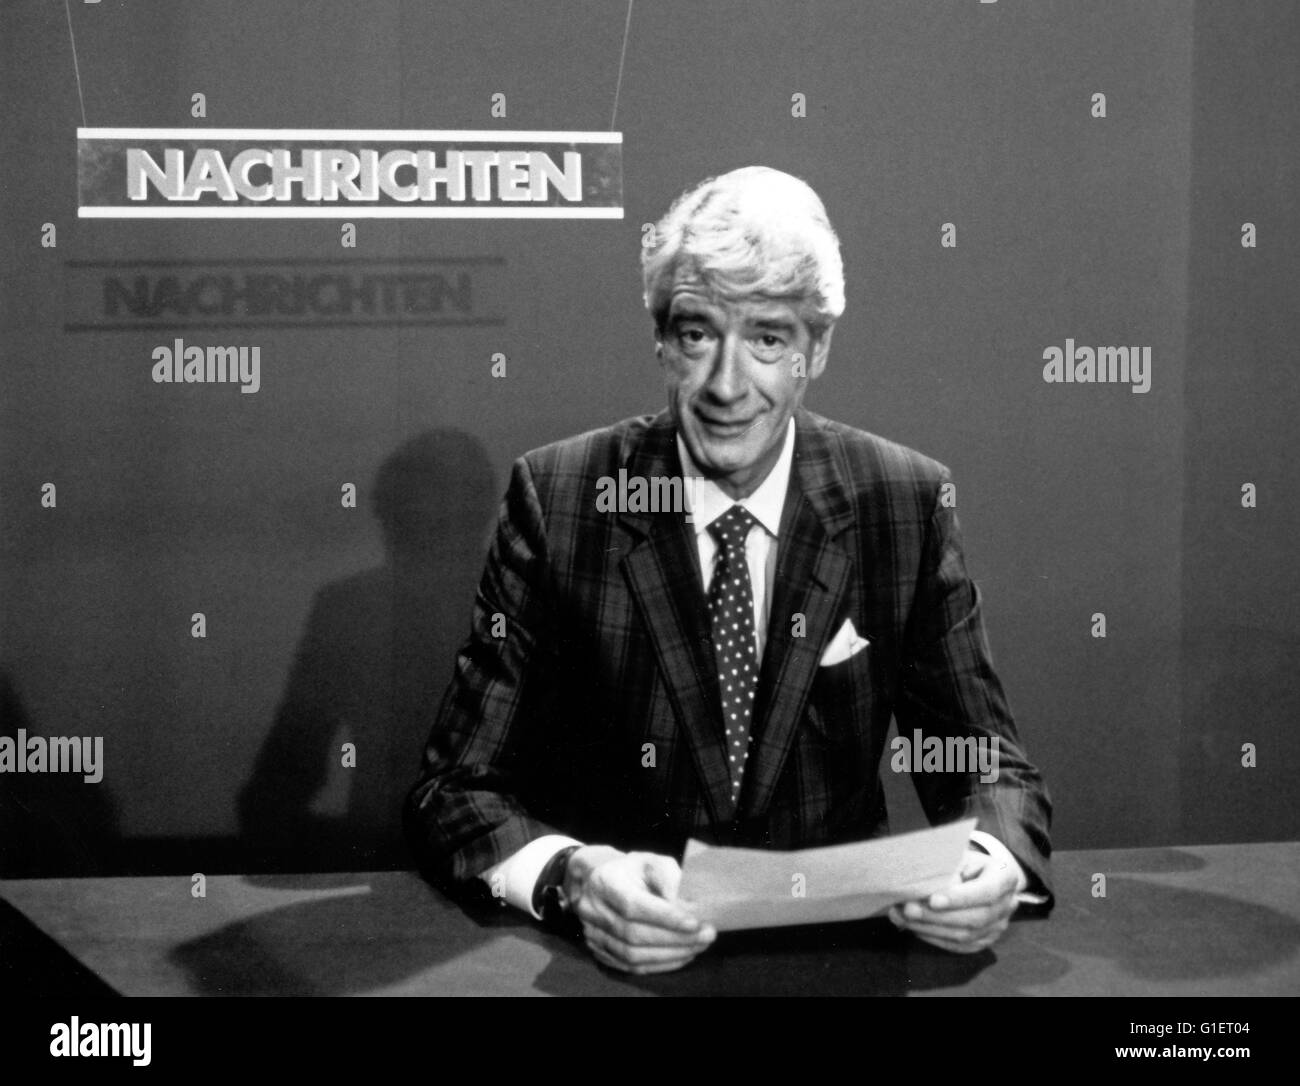 Der niederländische Showmaster und Entertainer Rudi Carrell in 'Rudis Tagesshow', Deutschland 1980er Jahre. Dutch entertainer Rudi Carrell at 'Rudis Tagesshow', Germany 1980s. Stock Photo